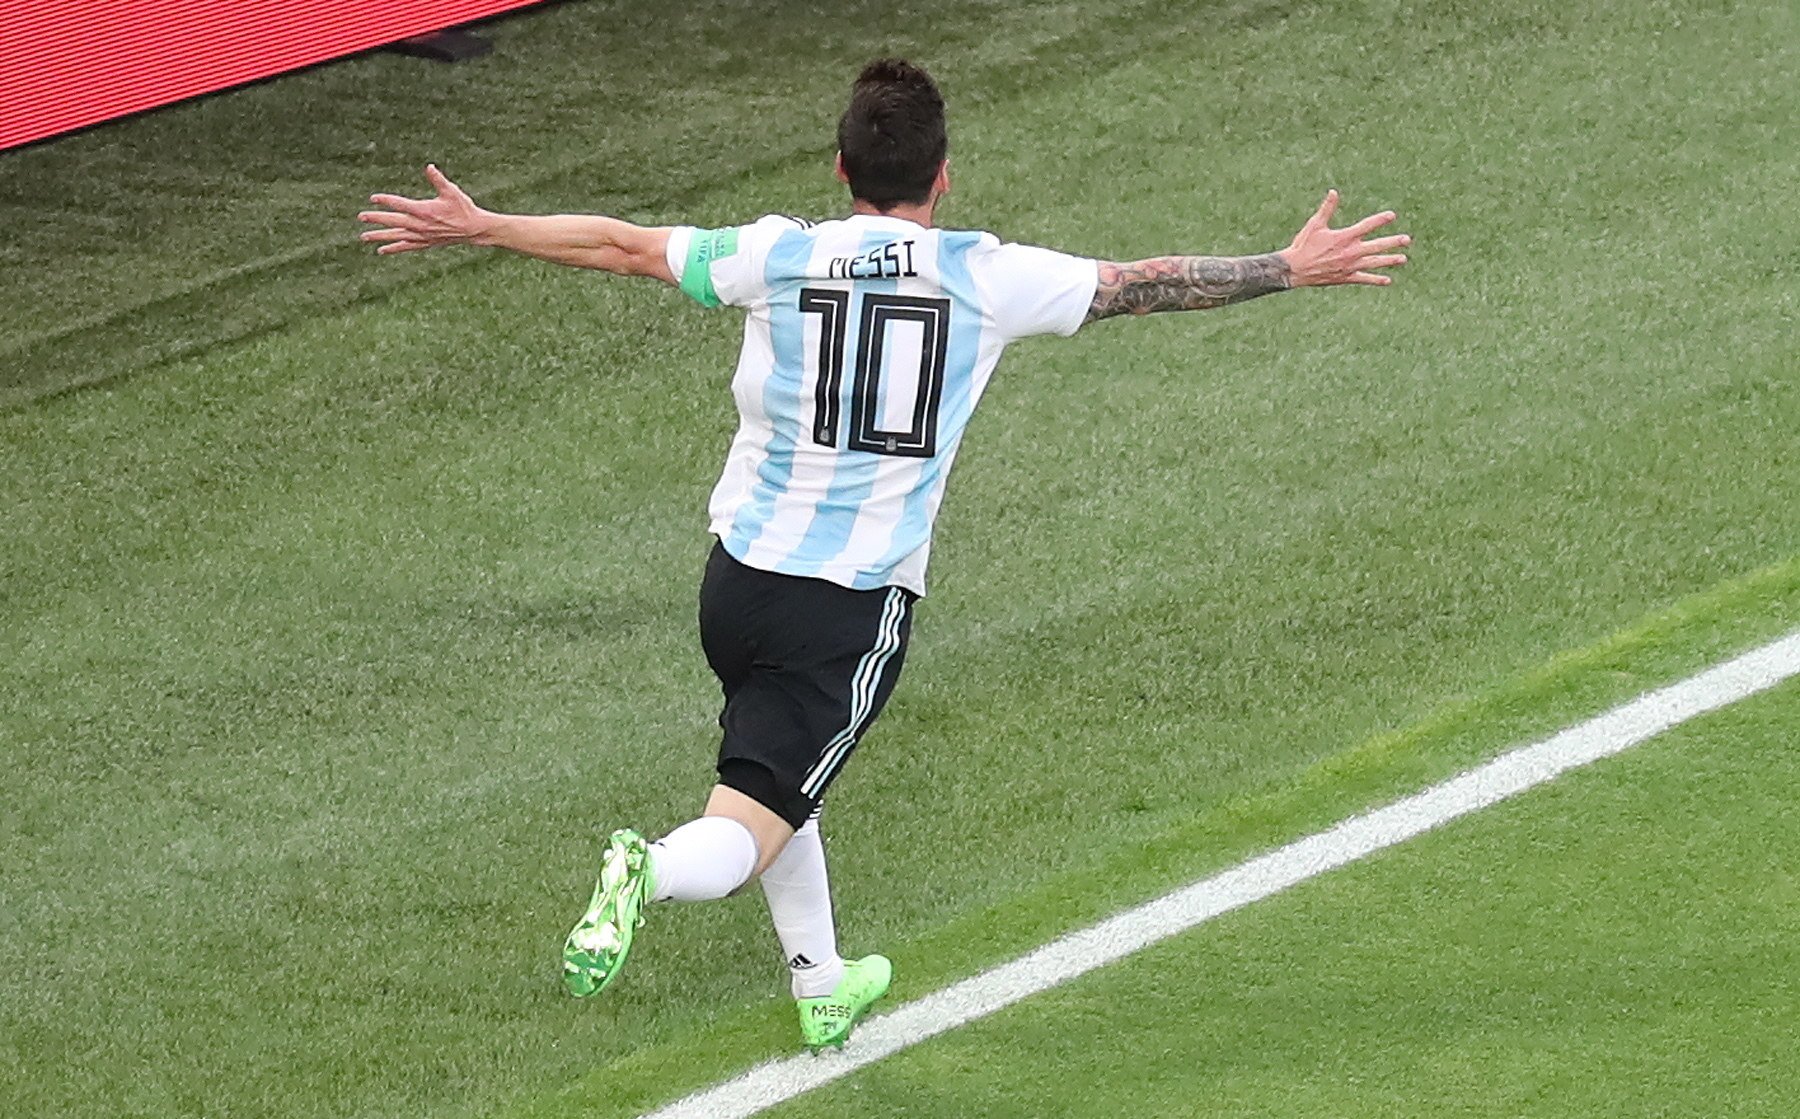 El regal d'un periodista, talismà de Messi al Mundial?